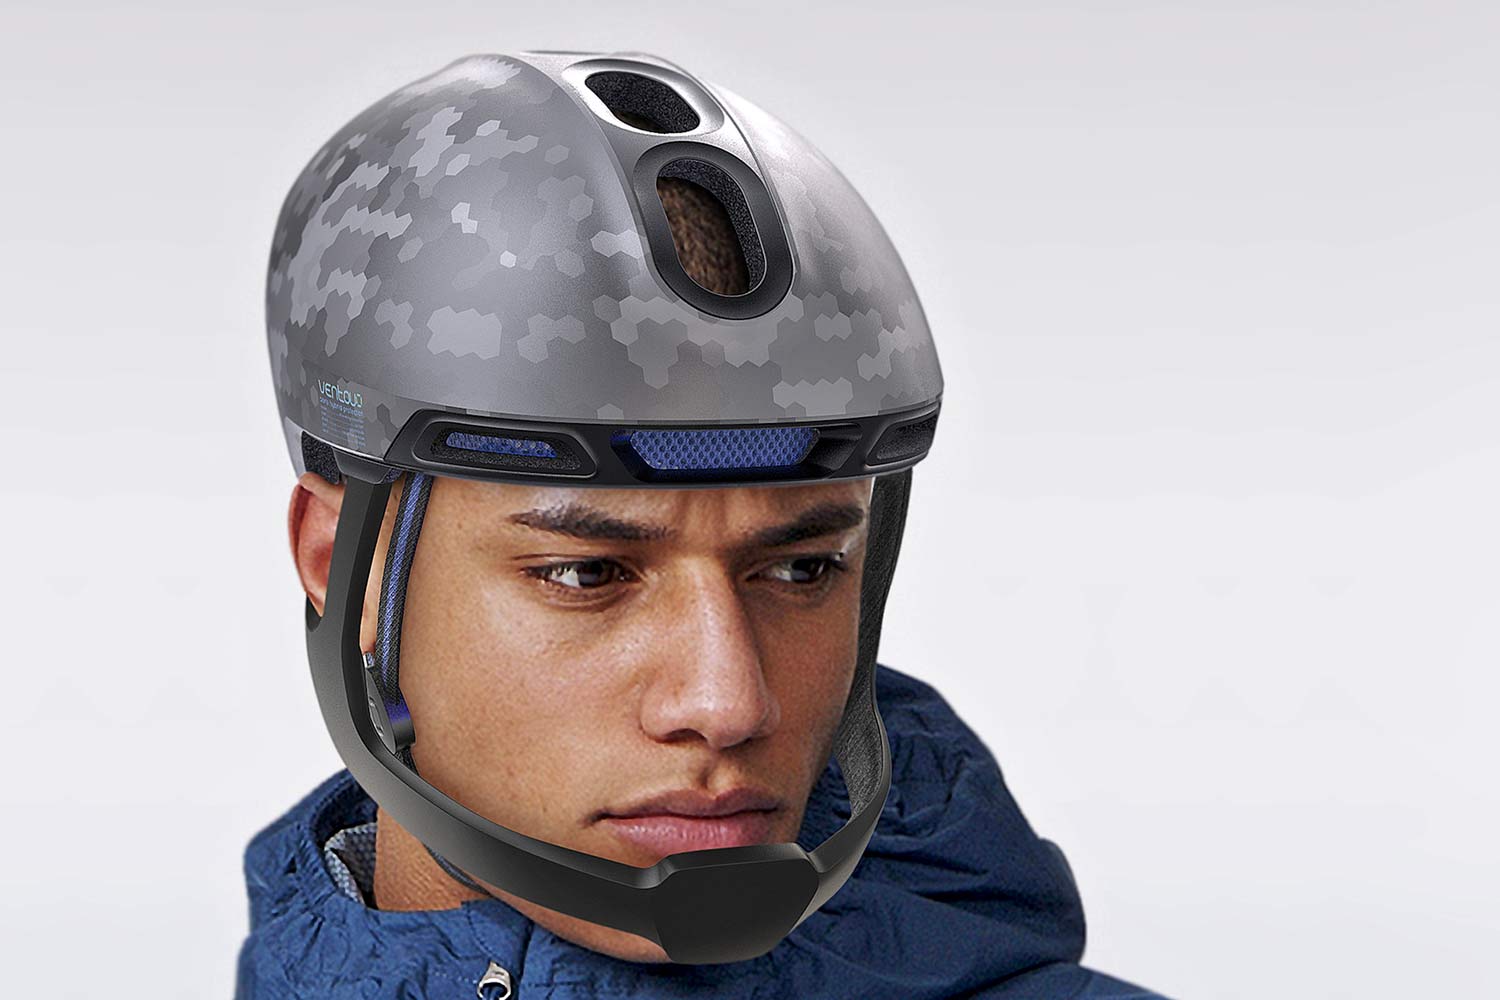 Ventoux aero full-face road bike helmet concept